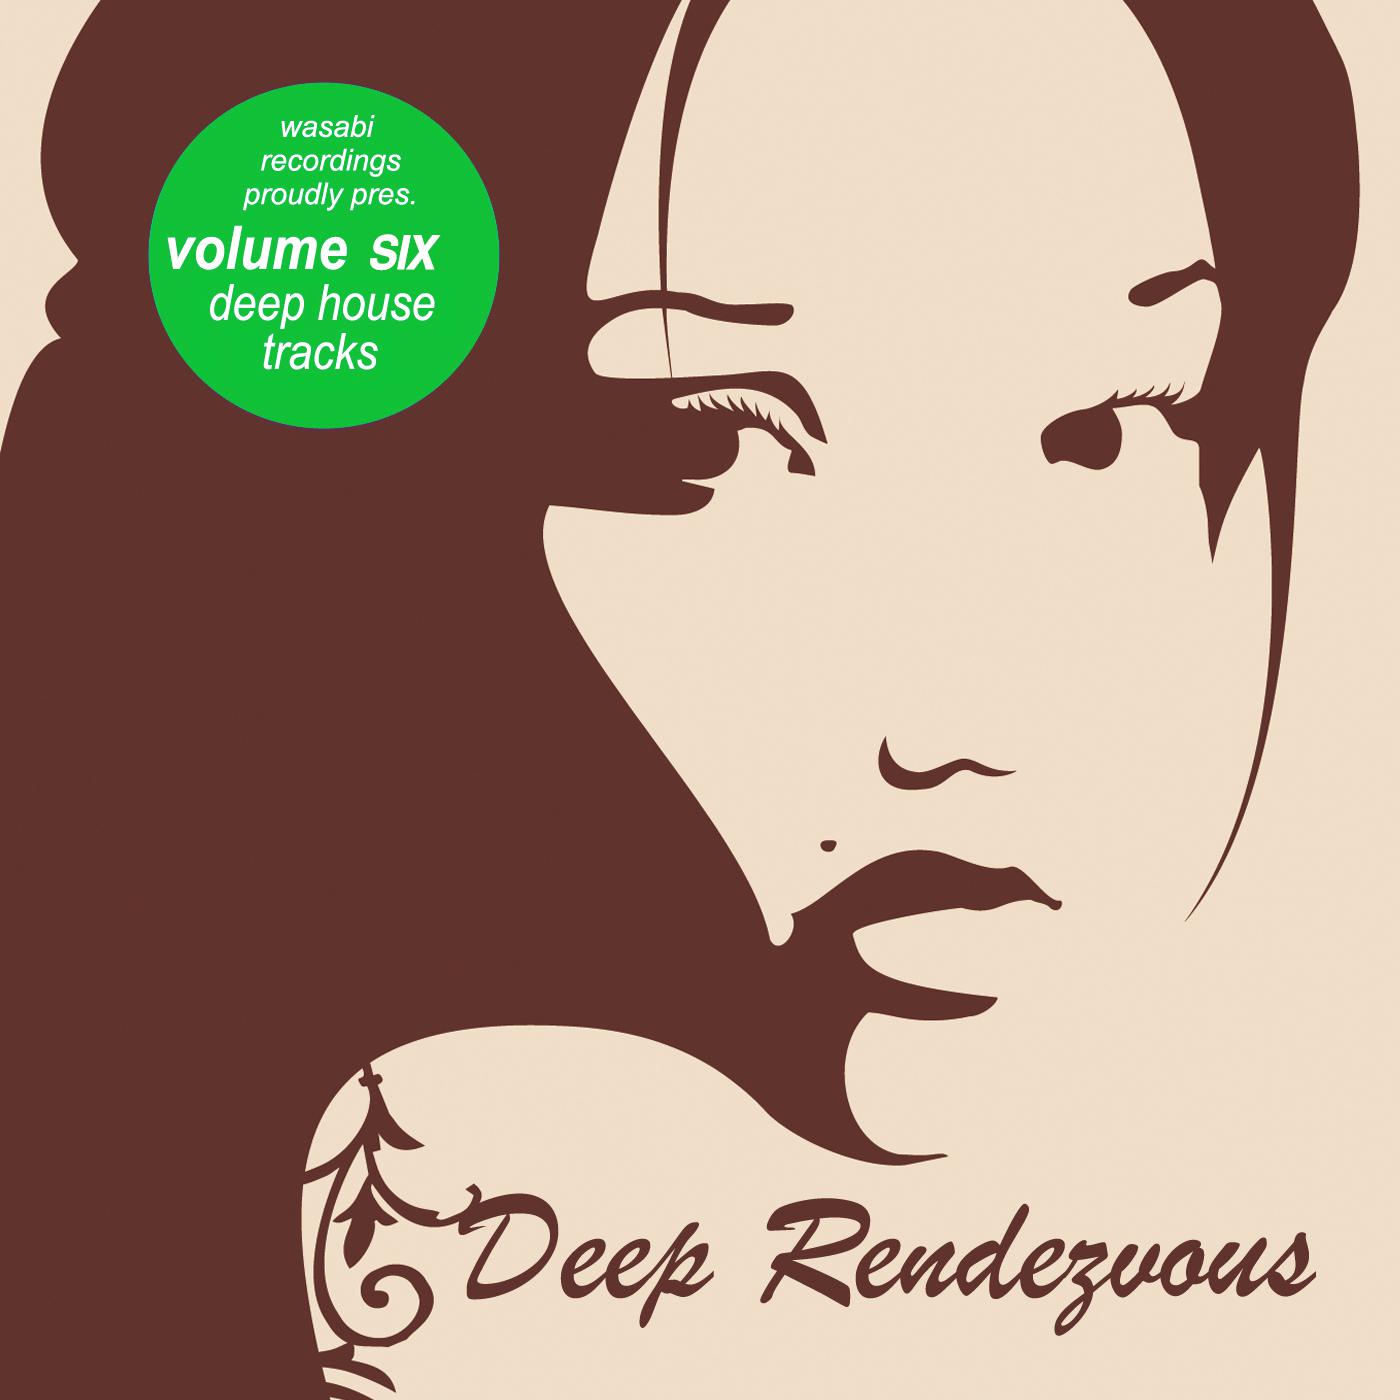 Deep Rendevouz, Vol. 6